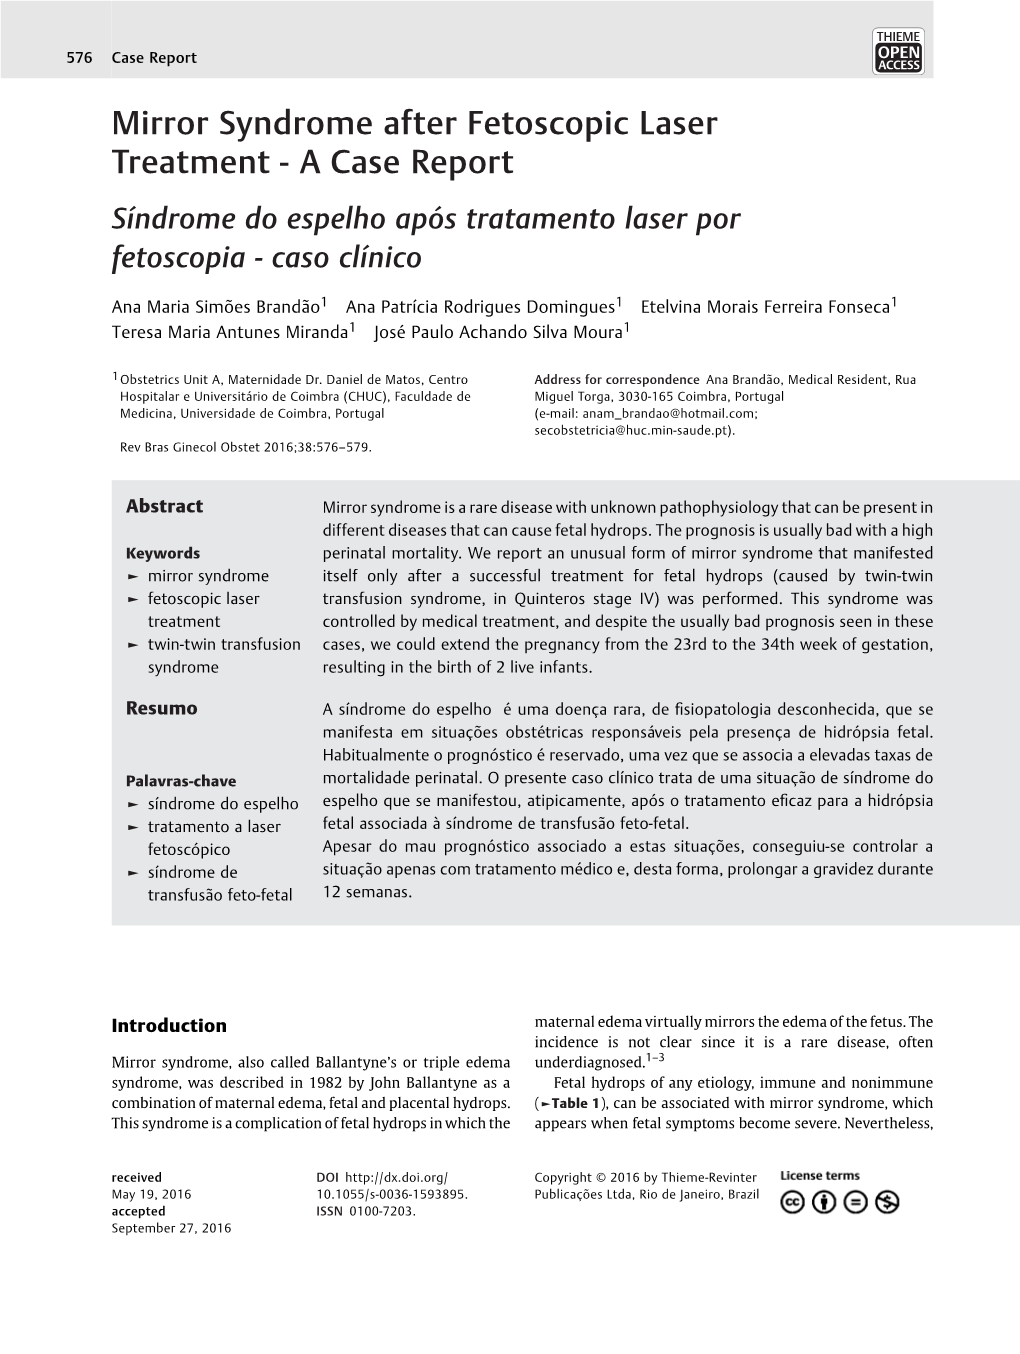 Mirror Syndrome After Fetoscopic Laser Treatment - a Case Report Síndrome Do Espelho Após Tratamento Laser Por Fetoscopia-Casoclínico